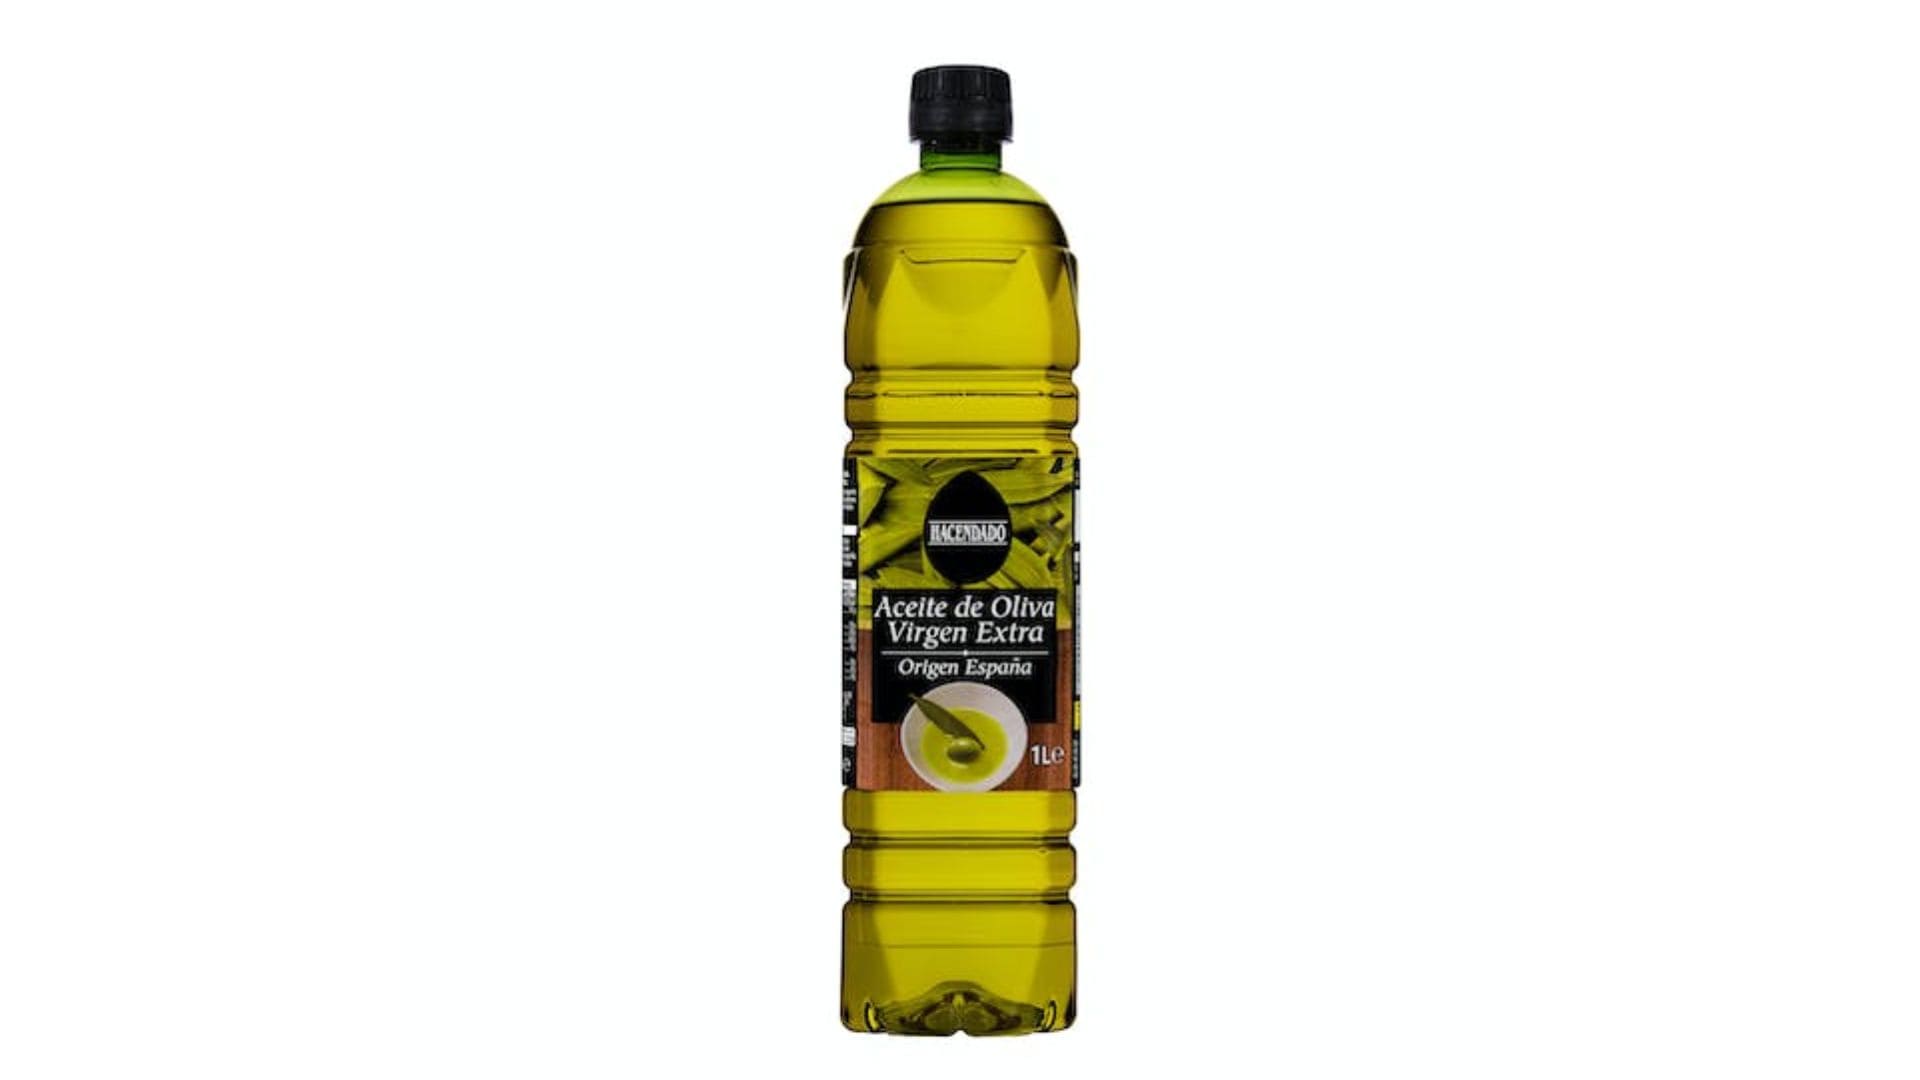 Aceite de oliva virgen extra de Hacendado